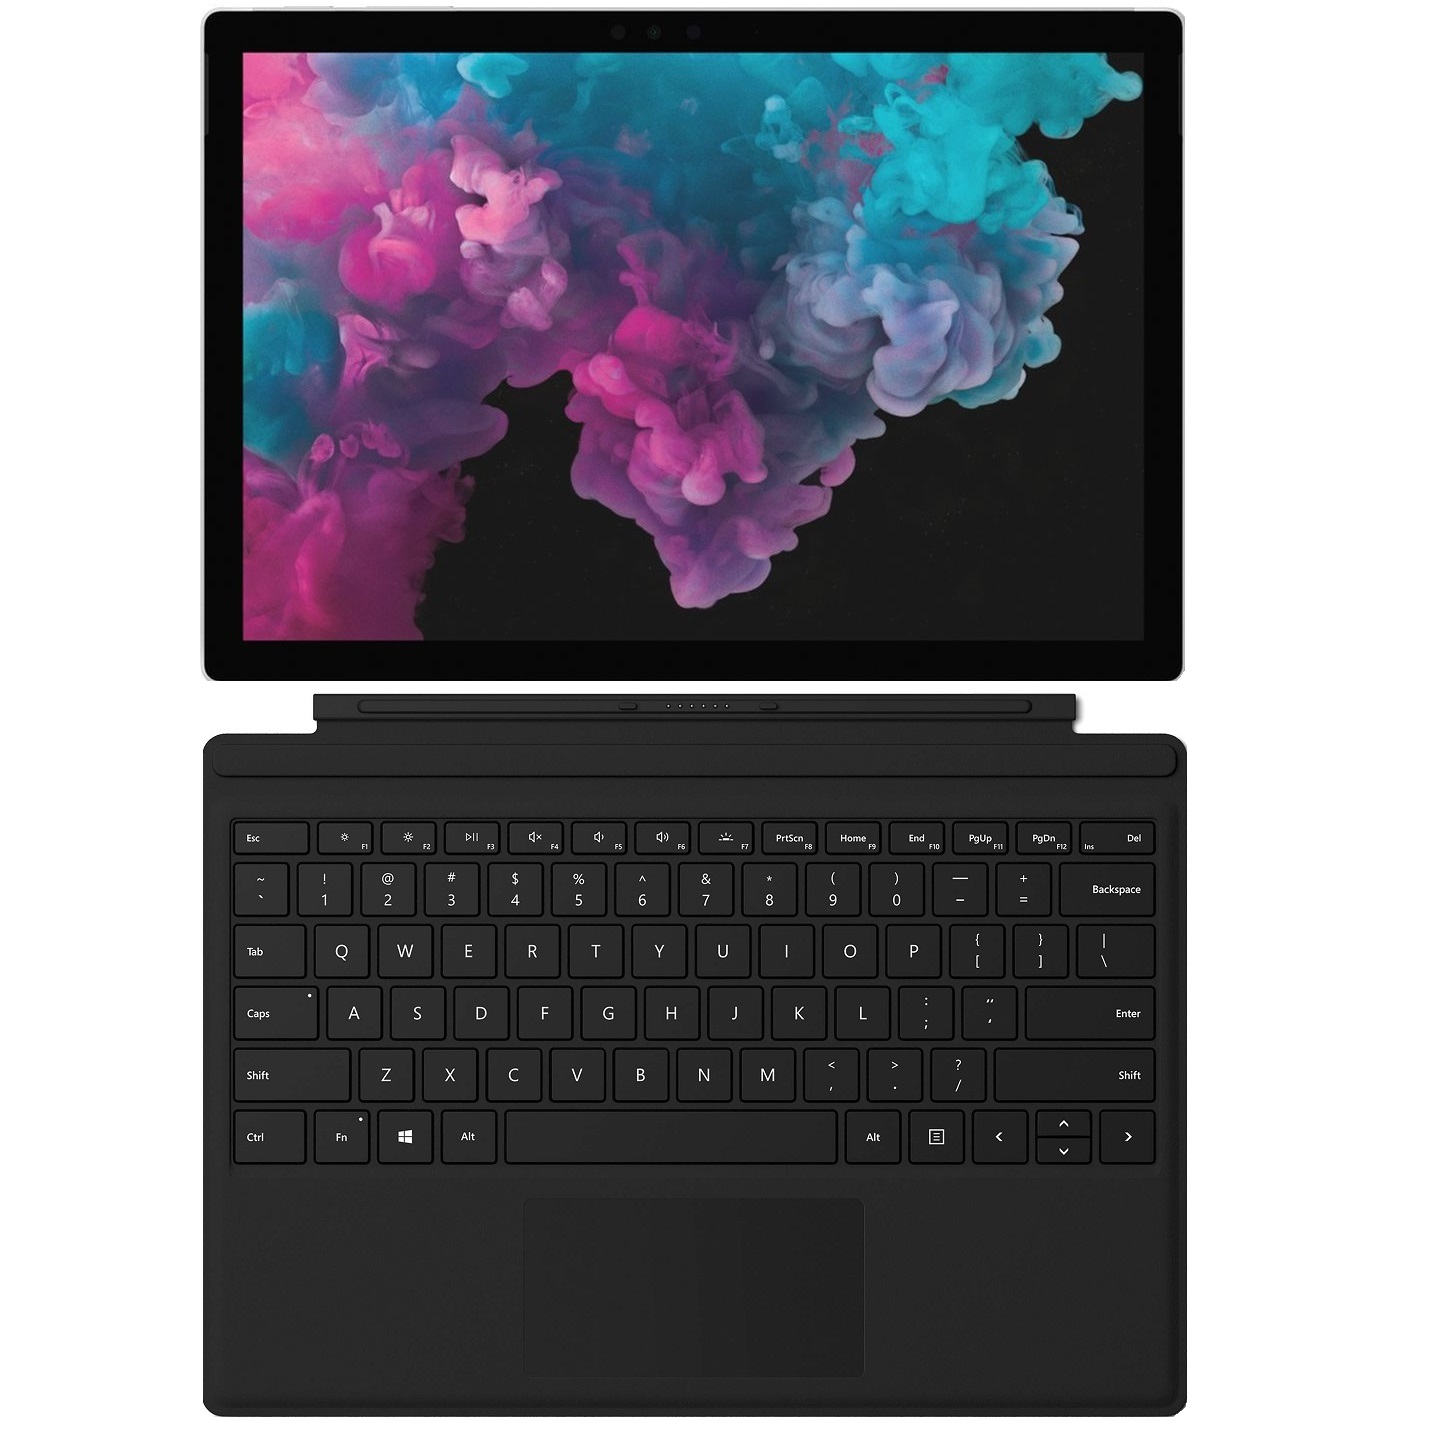  تبلت مایکروسافت مدل Surface Pro 6 - A به همراه کیبورد Black Type Cover 